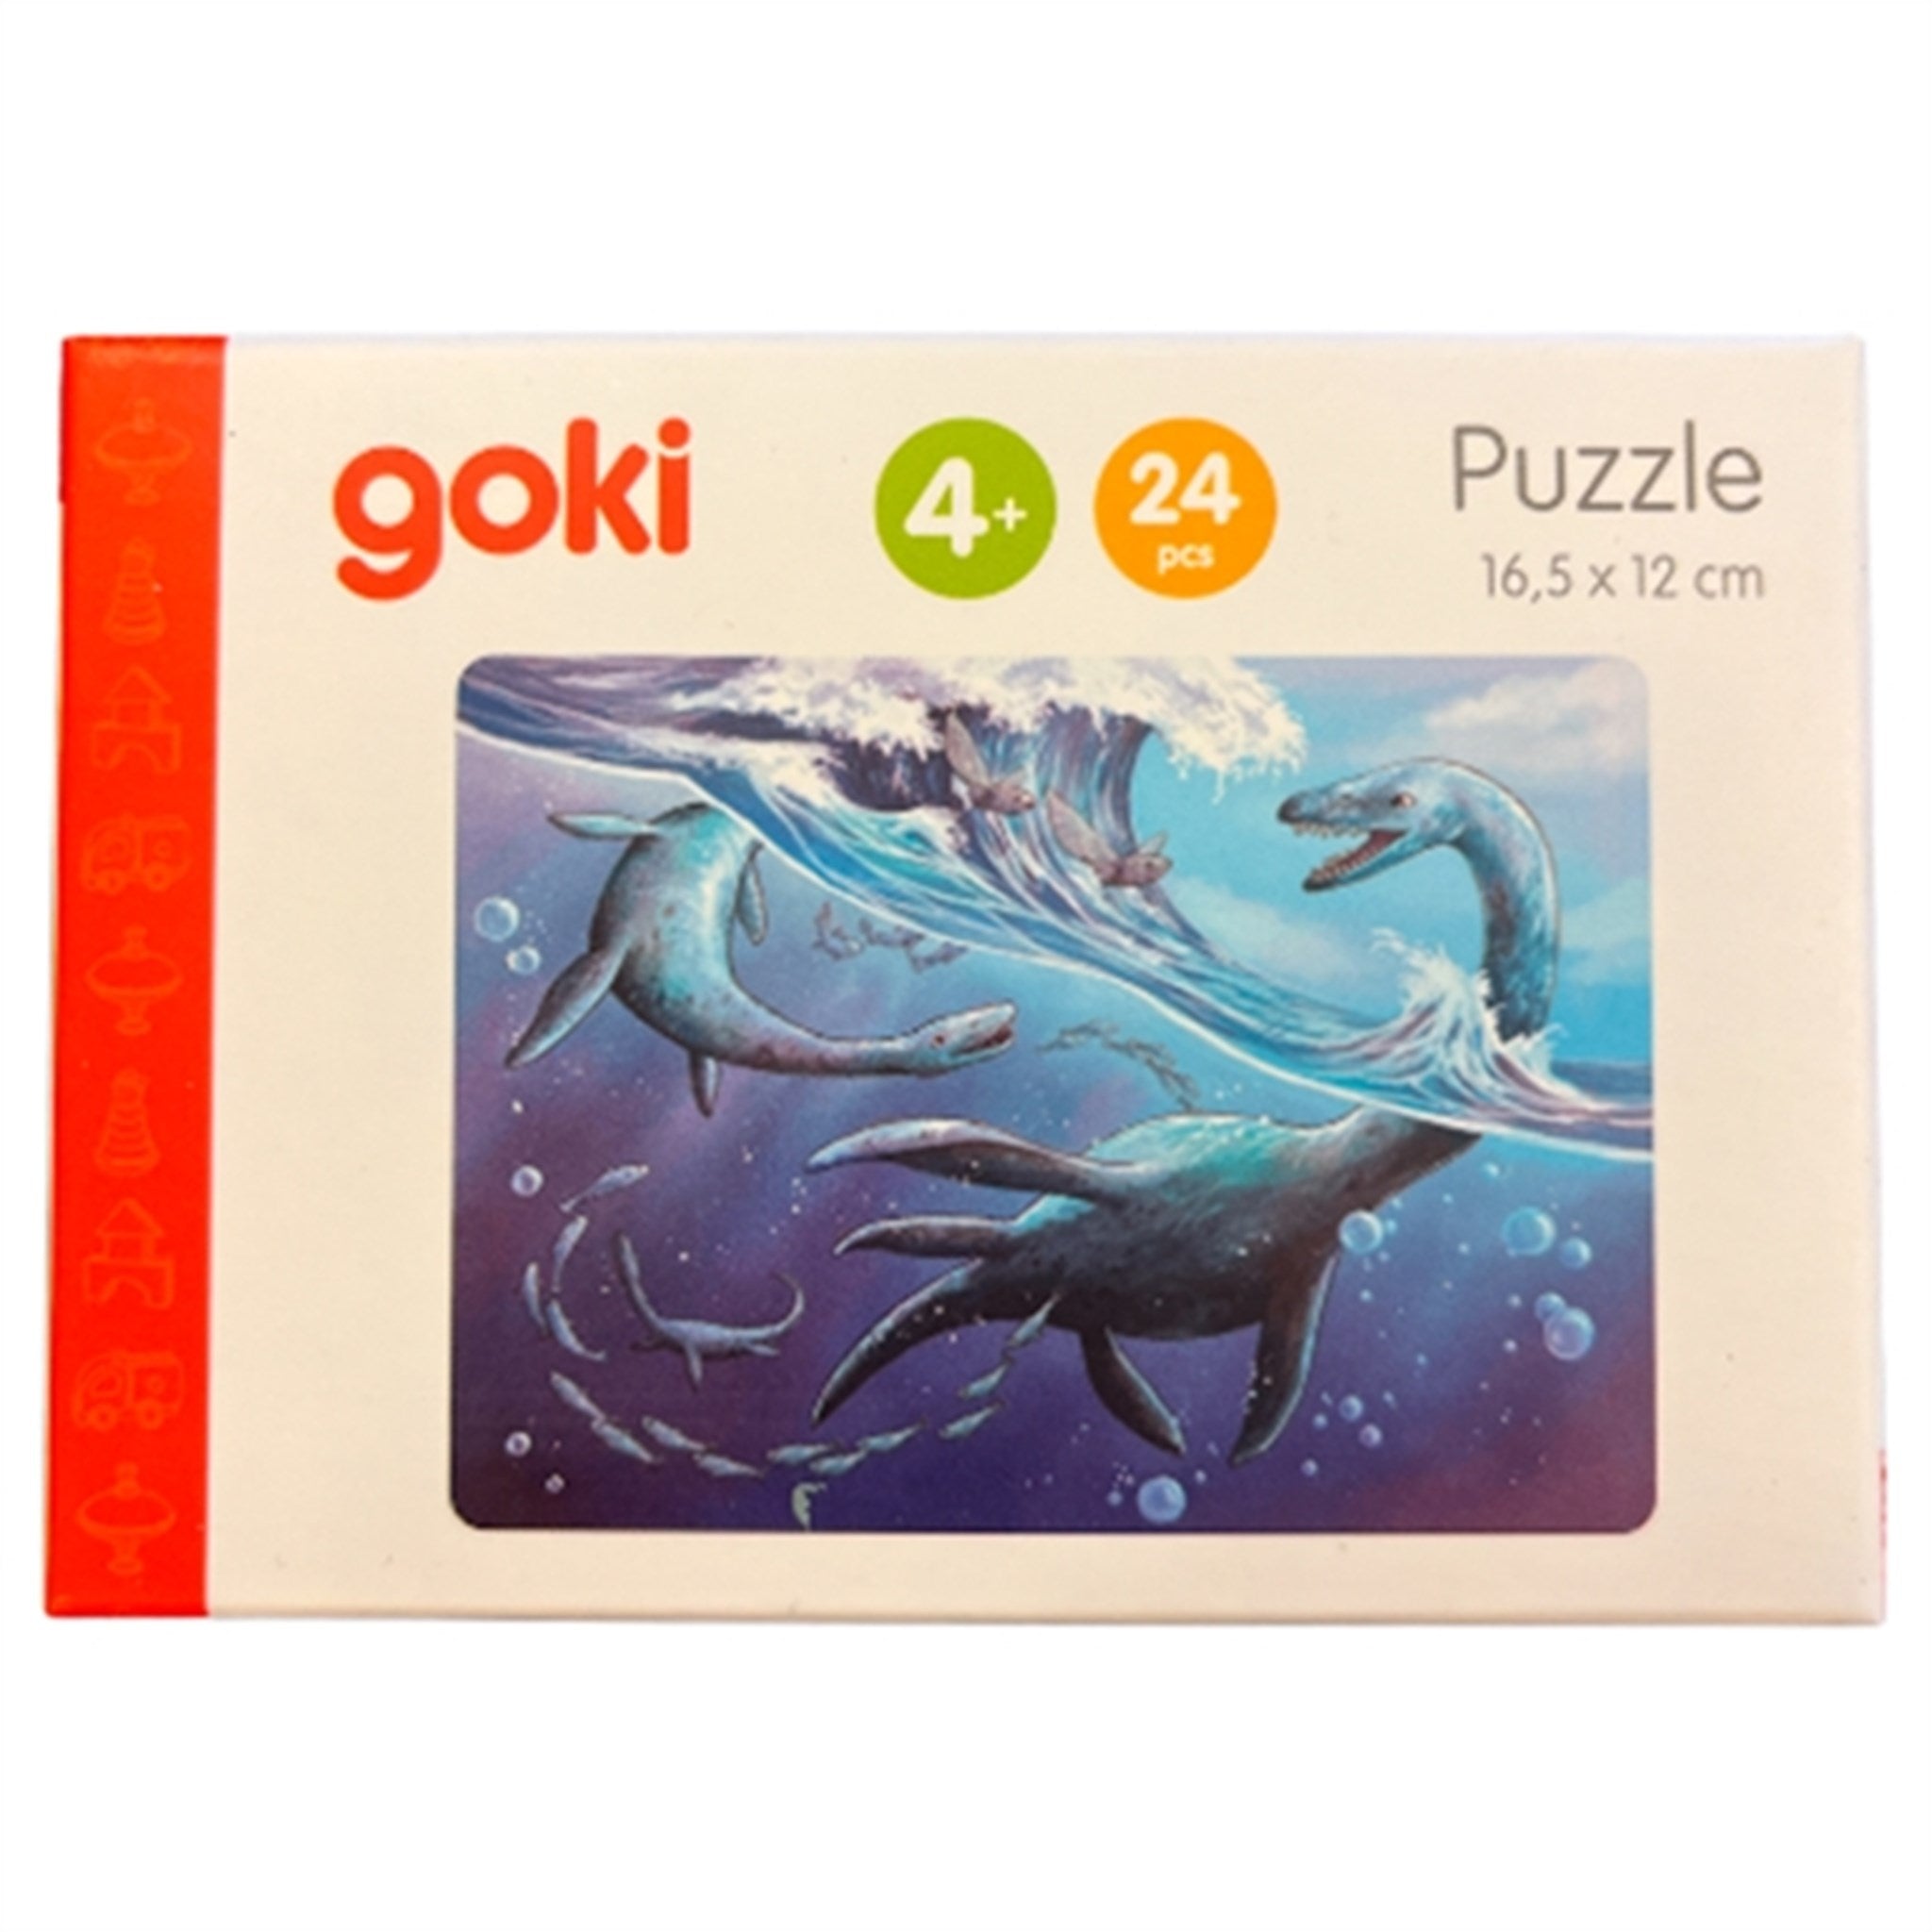 Goki Puzzle Mini - Dinosaur 4